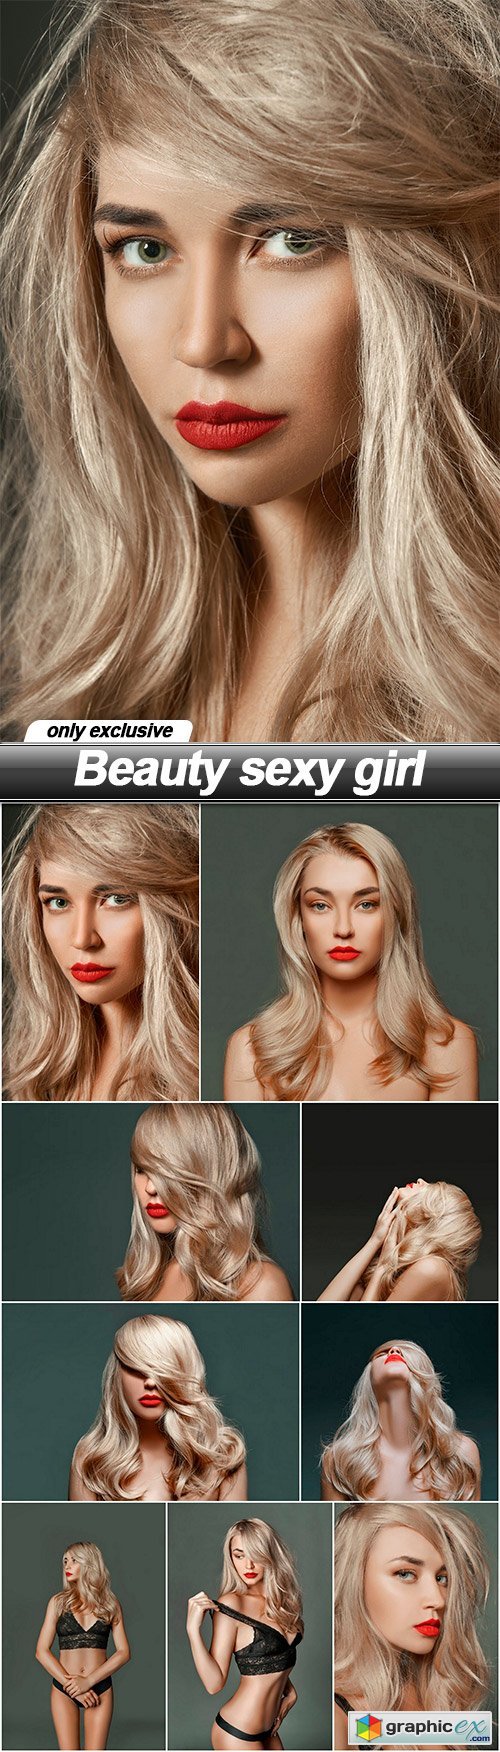 Beauty sexy girl - 9 UHQ JPEG